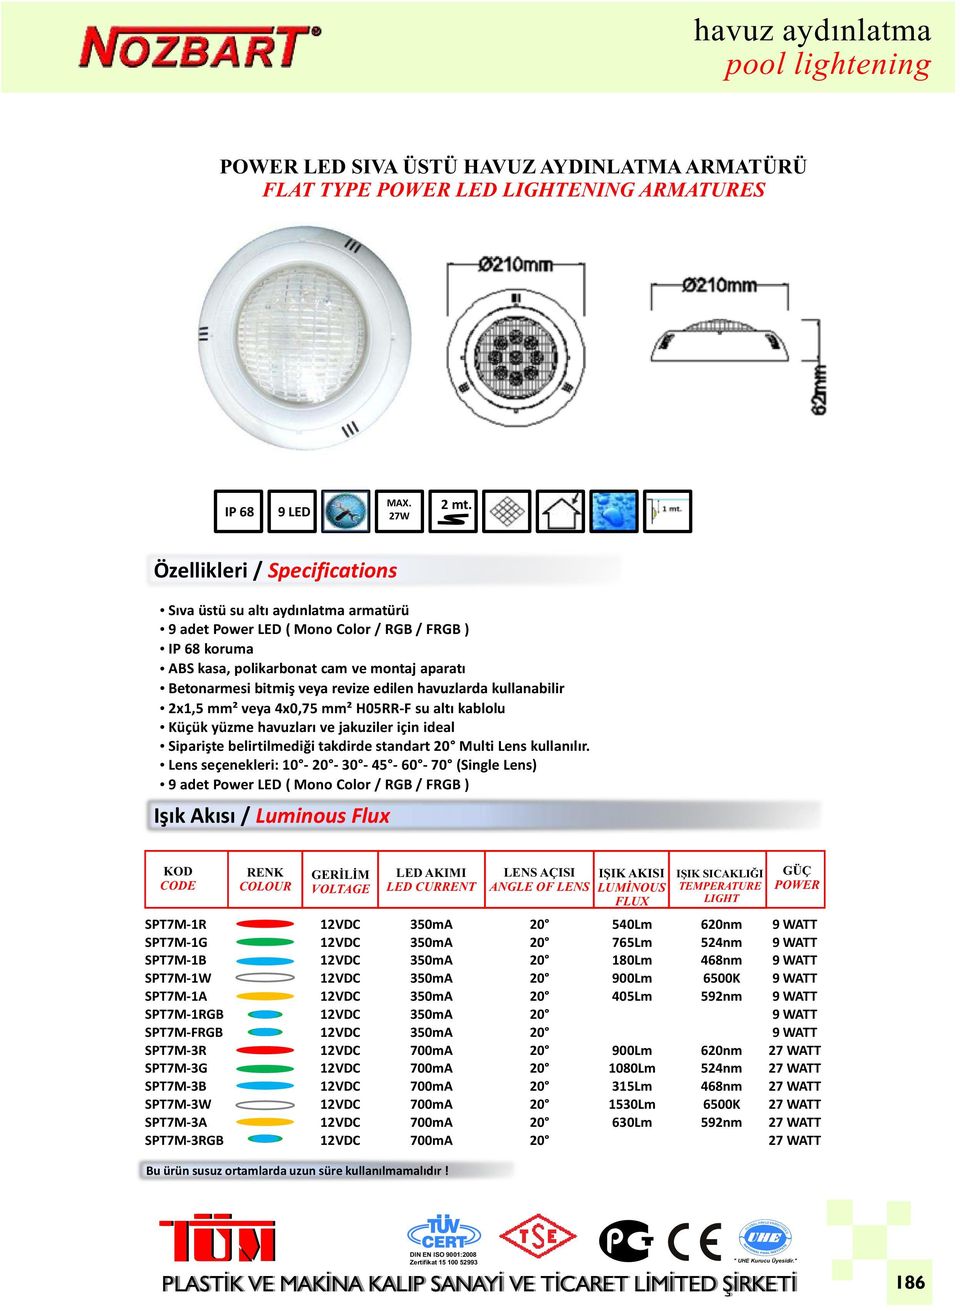 revize edilen havuzlarda kullanabilir 2x1,5 mm² veya 4x0,75 mm² H05RR-F su altı kablolu Küçük yüzme havuzları ve jakuziler için ideal Siparişte belirtilmediği takdirde standart Multi Lens kullanılır.